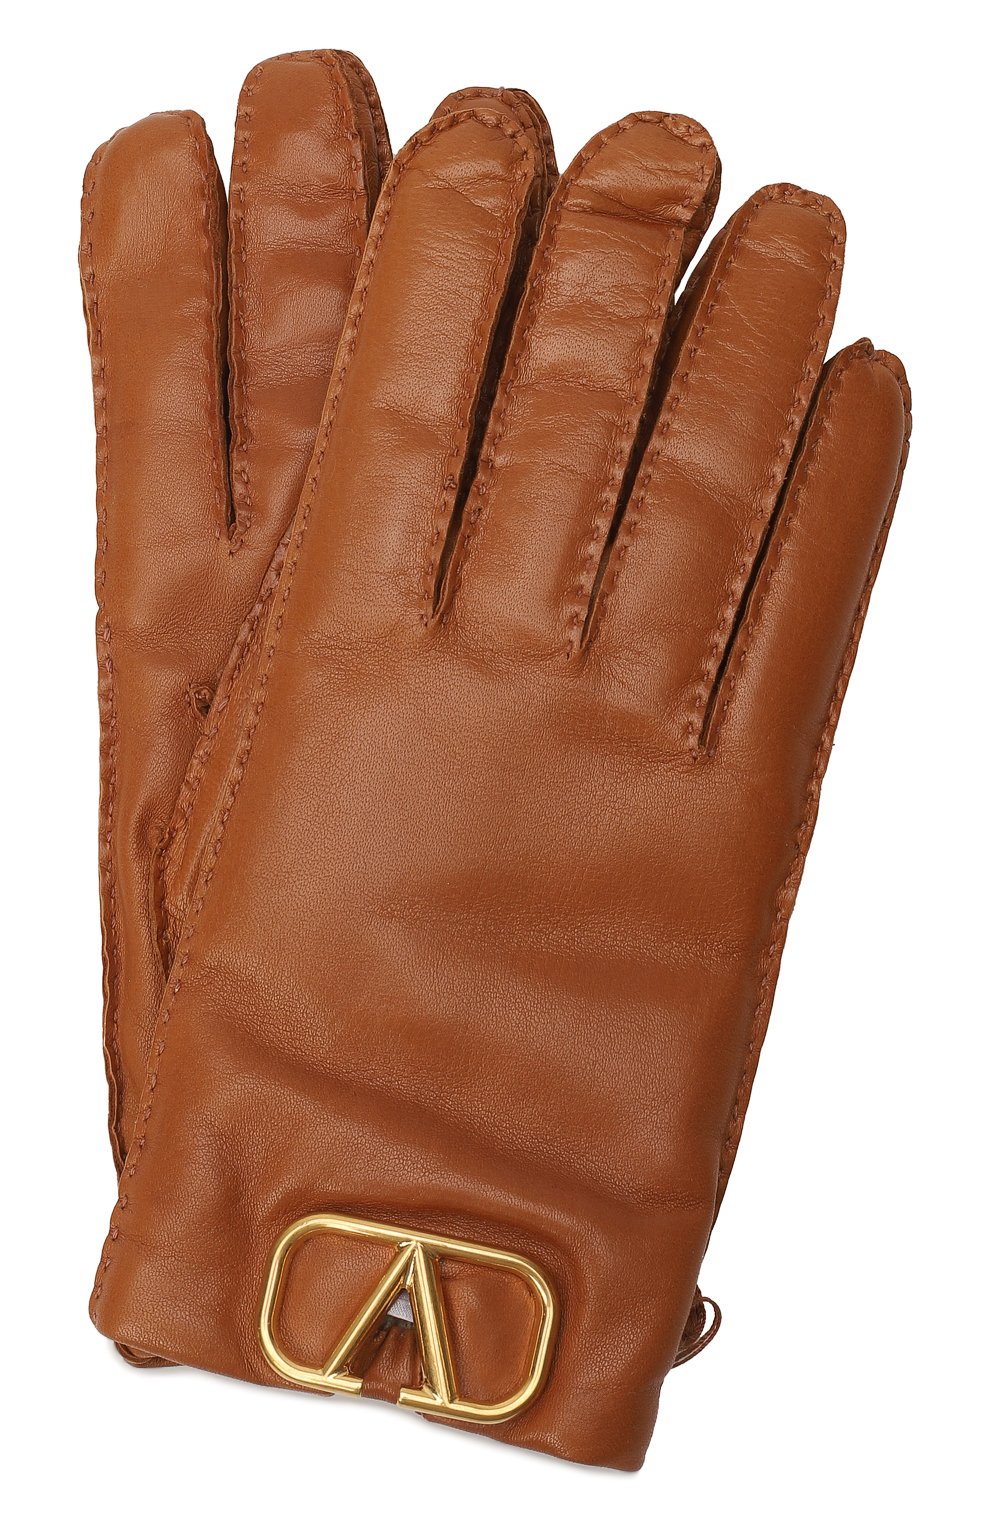 Кожаные перчатки | Valentino | Коричневый - 1